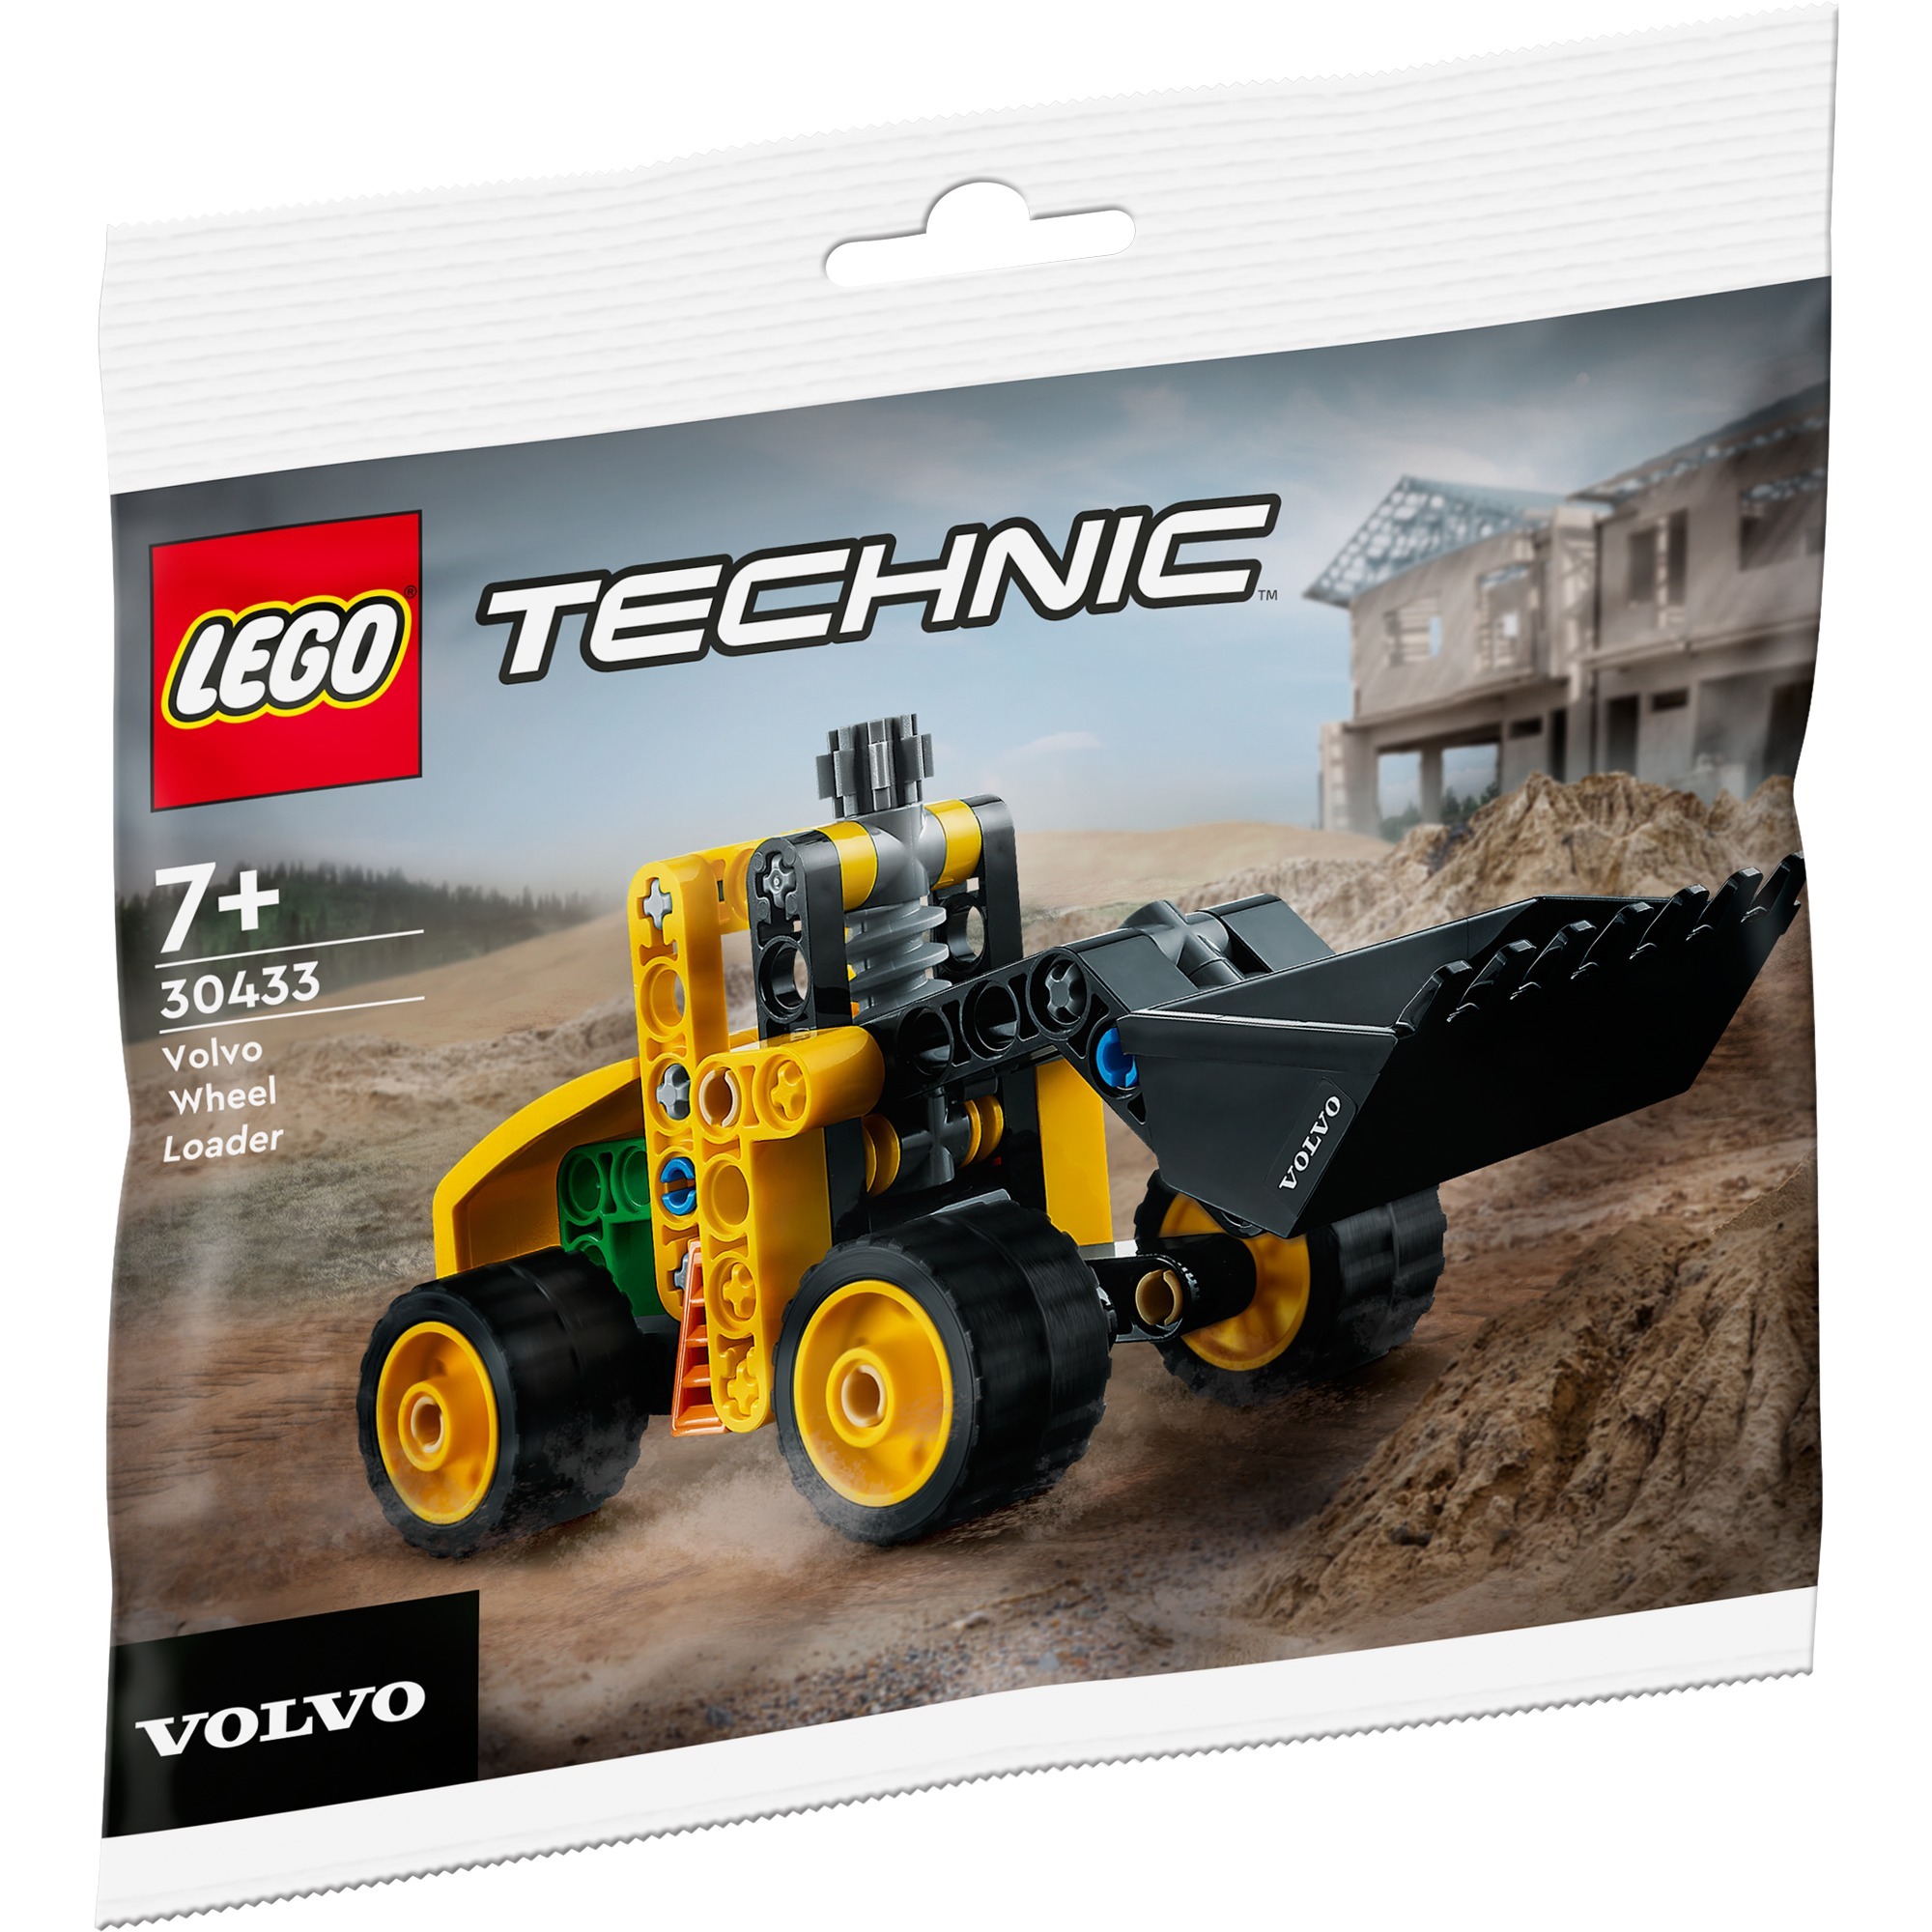 Spielzeug: Lego 30433 Technic Volvo Radlader